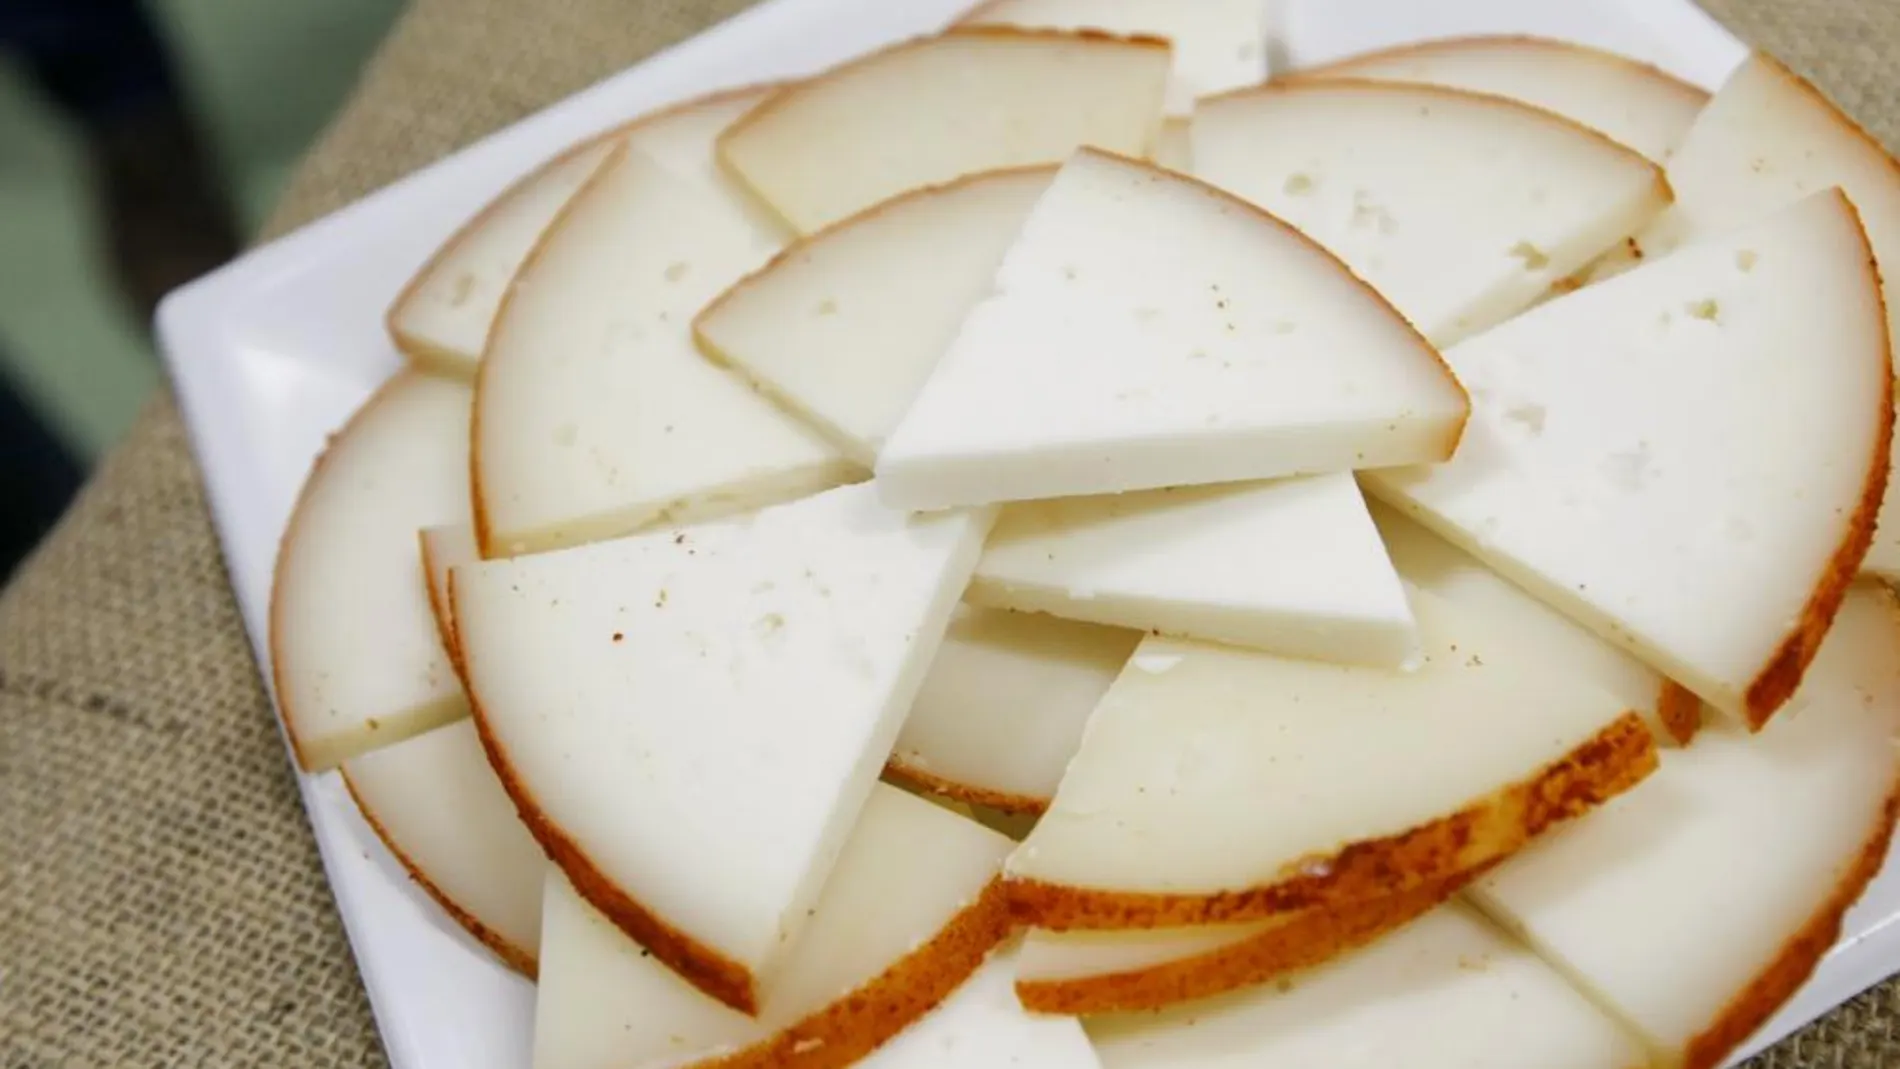 La nueva técnica permitirá alargar la vida de los quesos